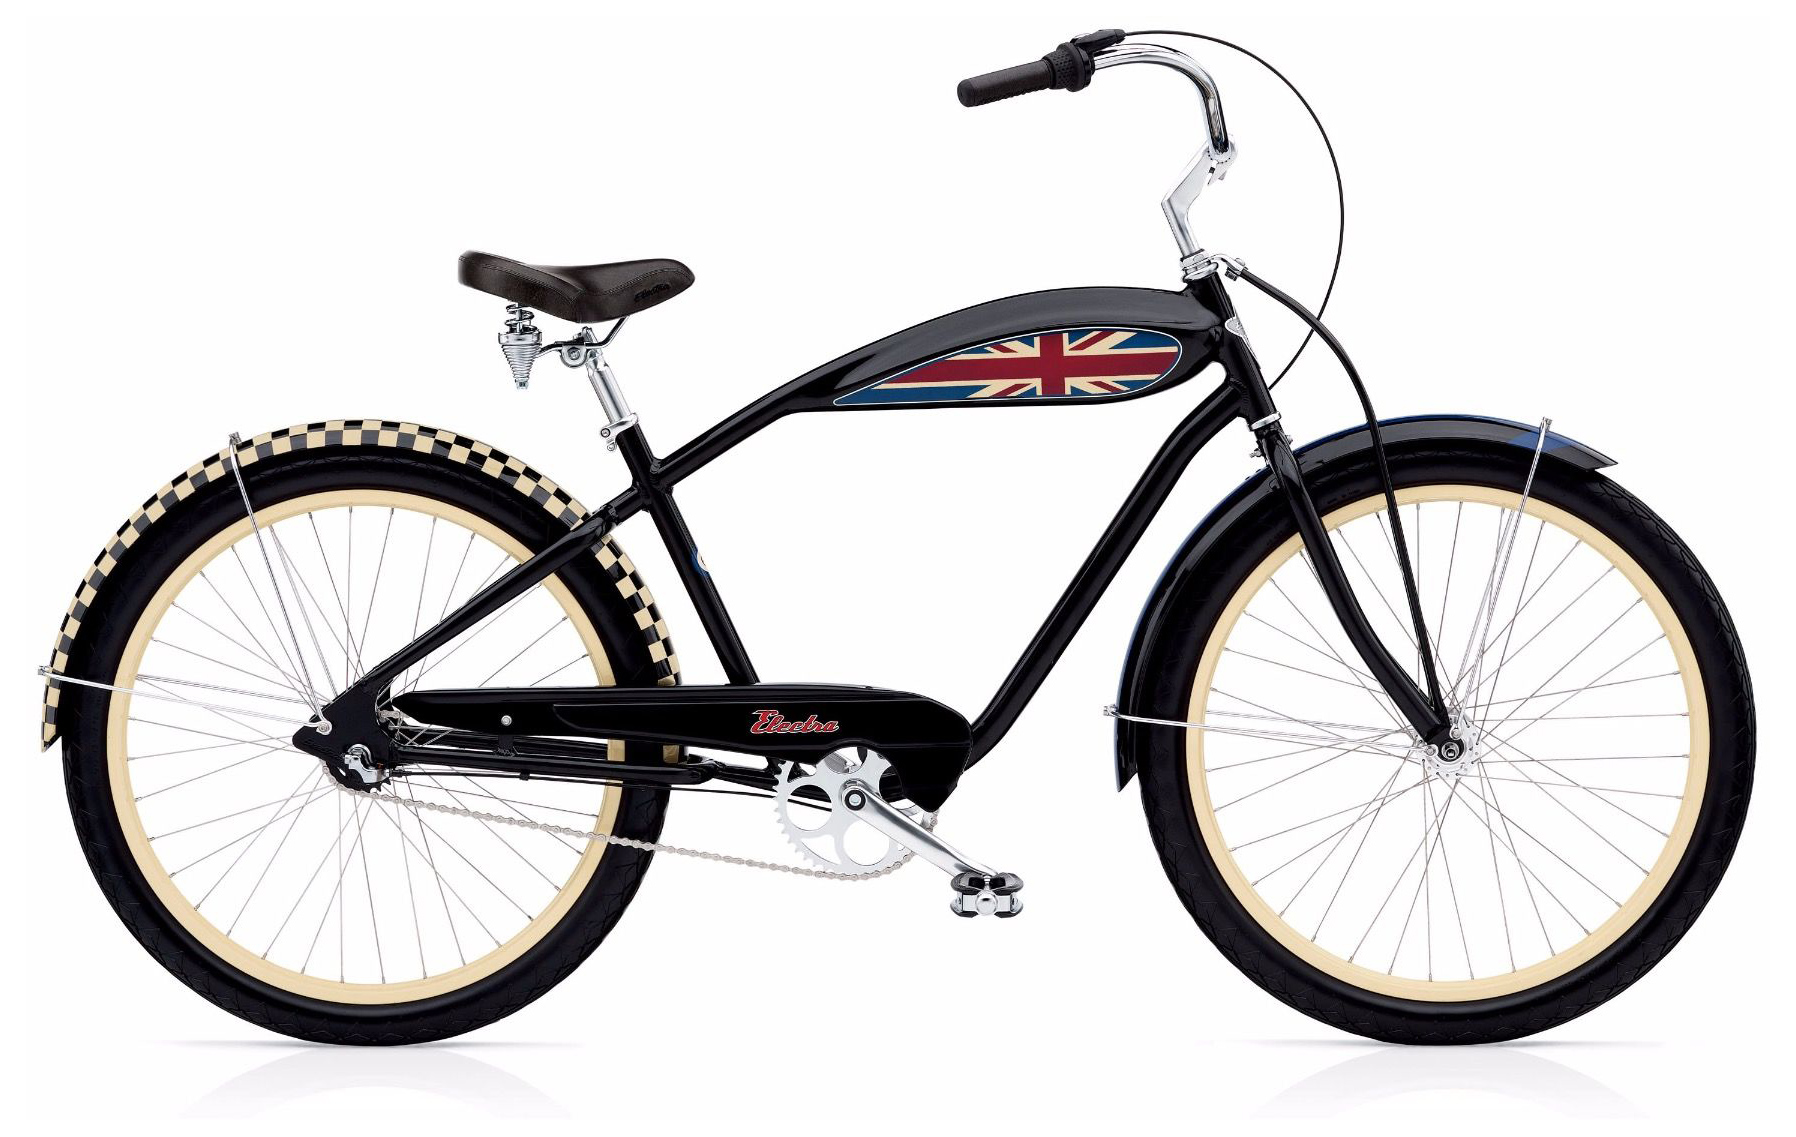  Отзывы о Велосипеде круизере Electra Mod 3i 2019